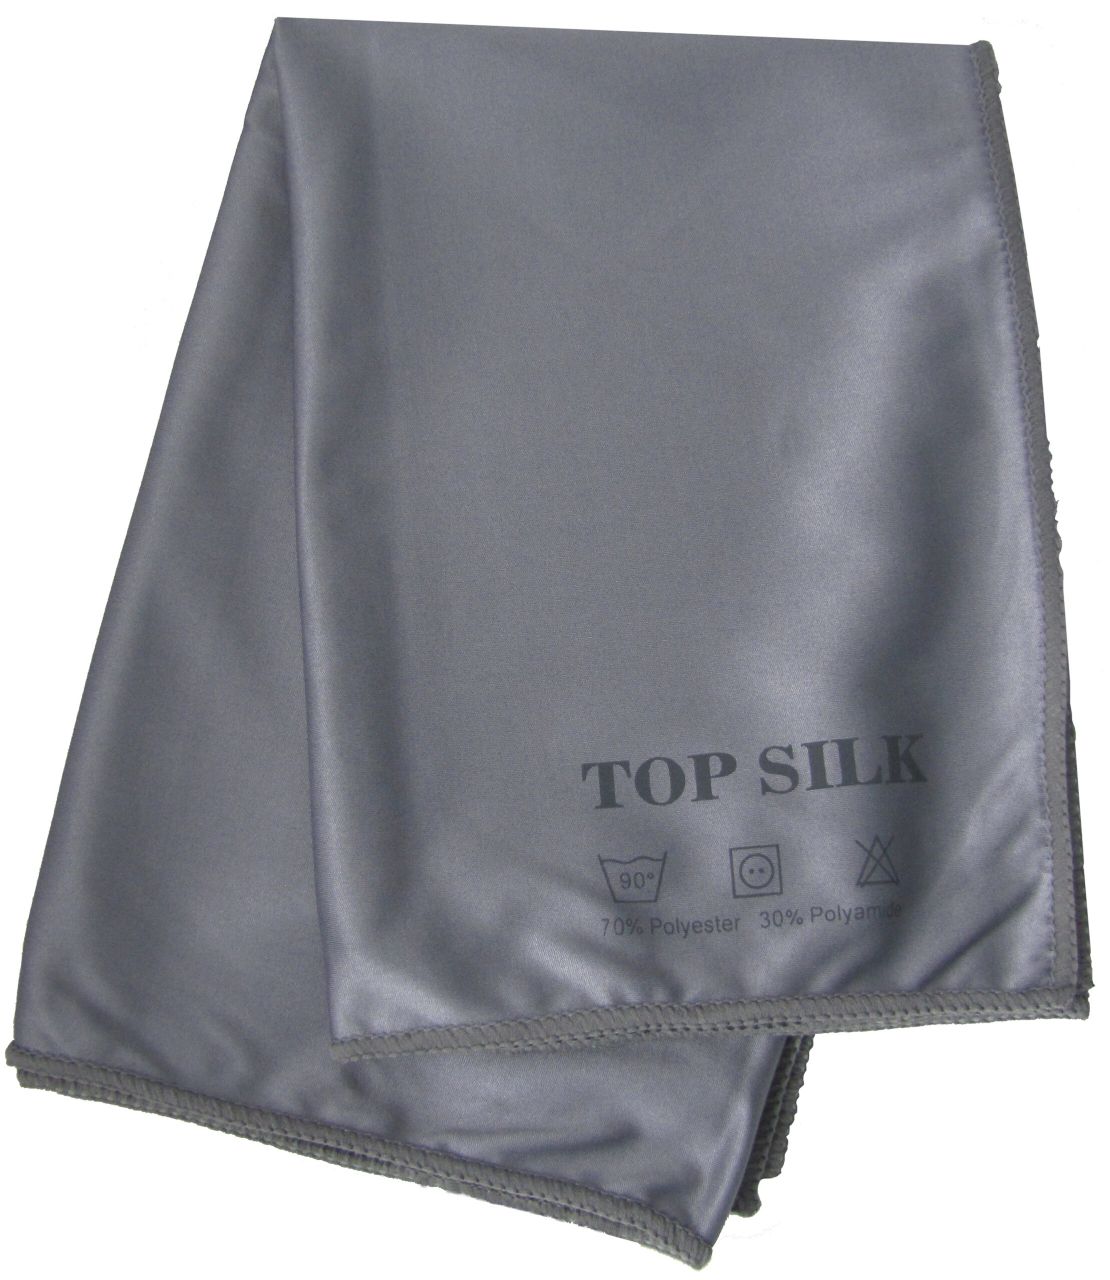 Glazendoek Top Silk grijs 50x70cm